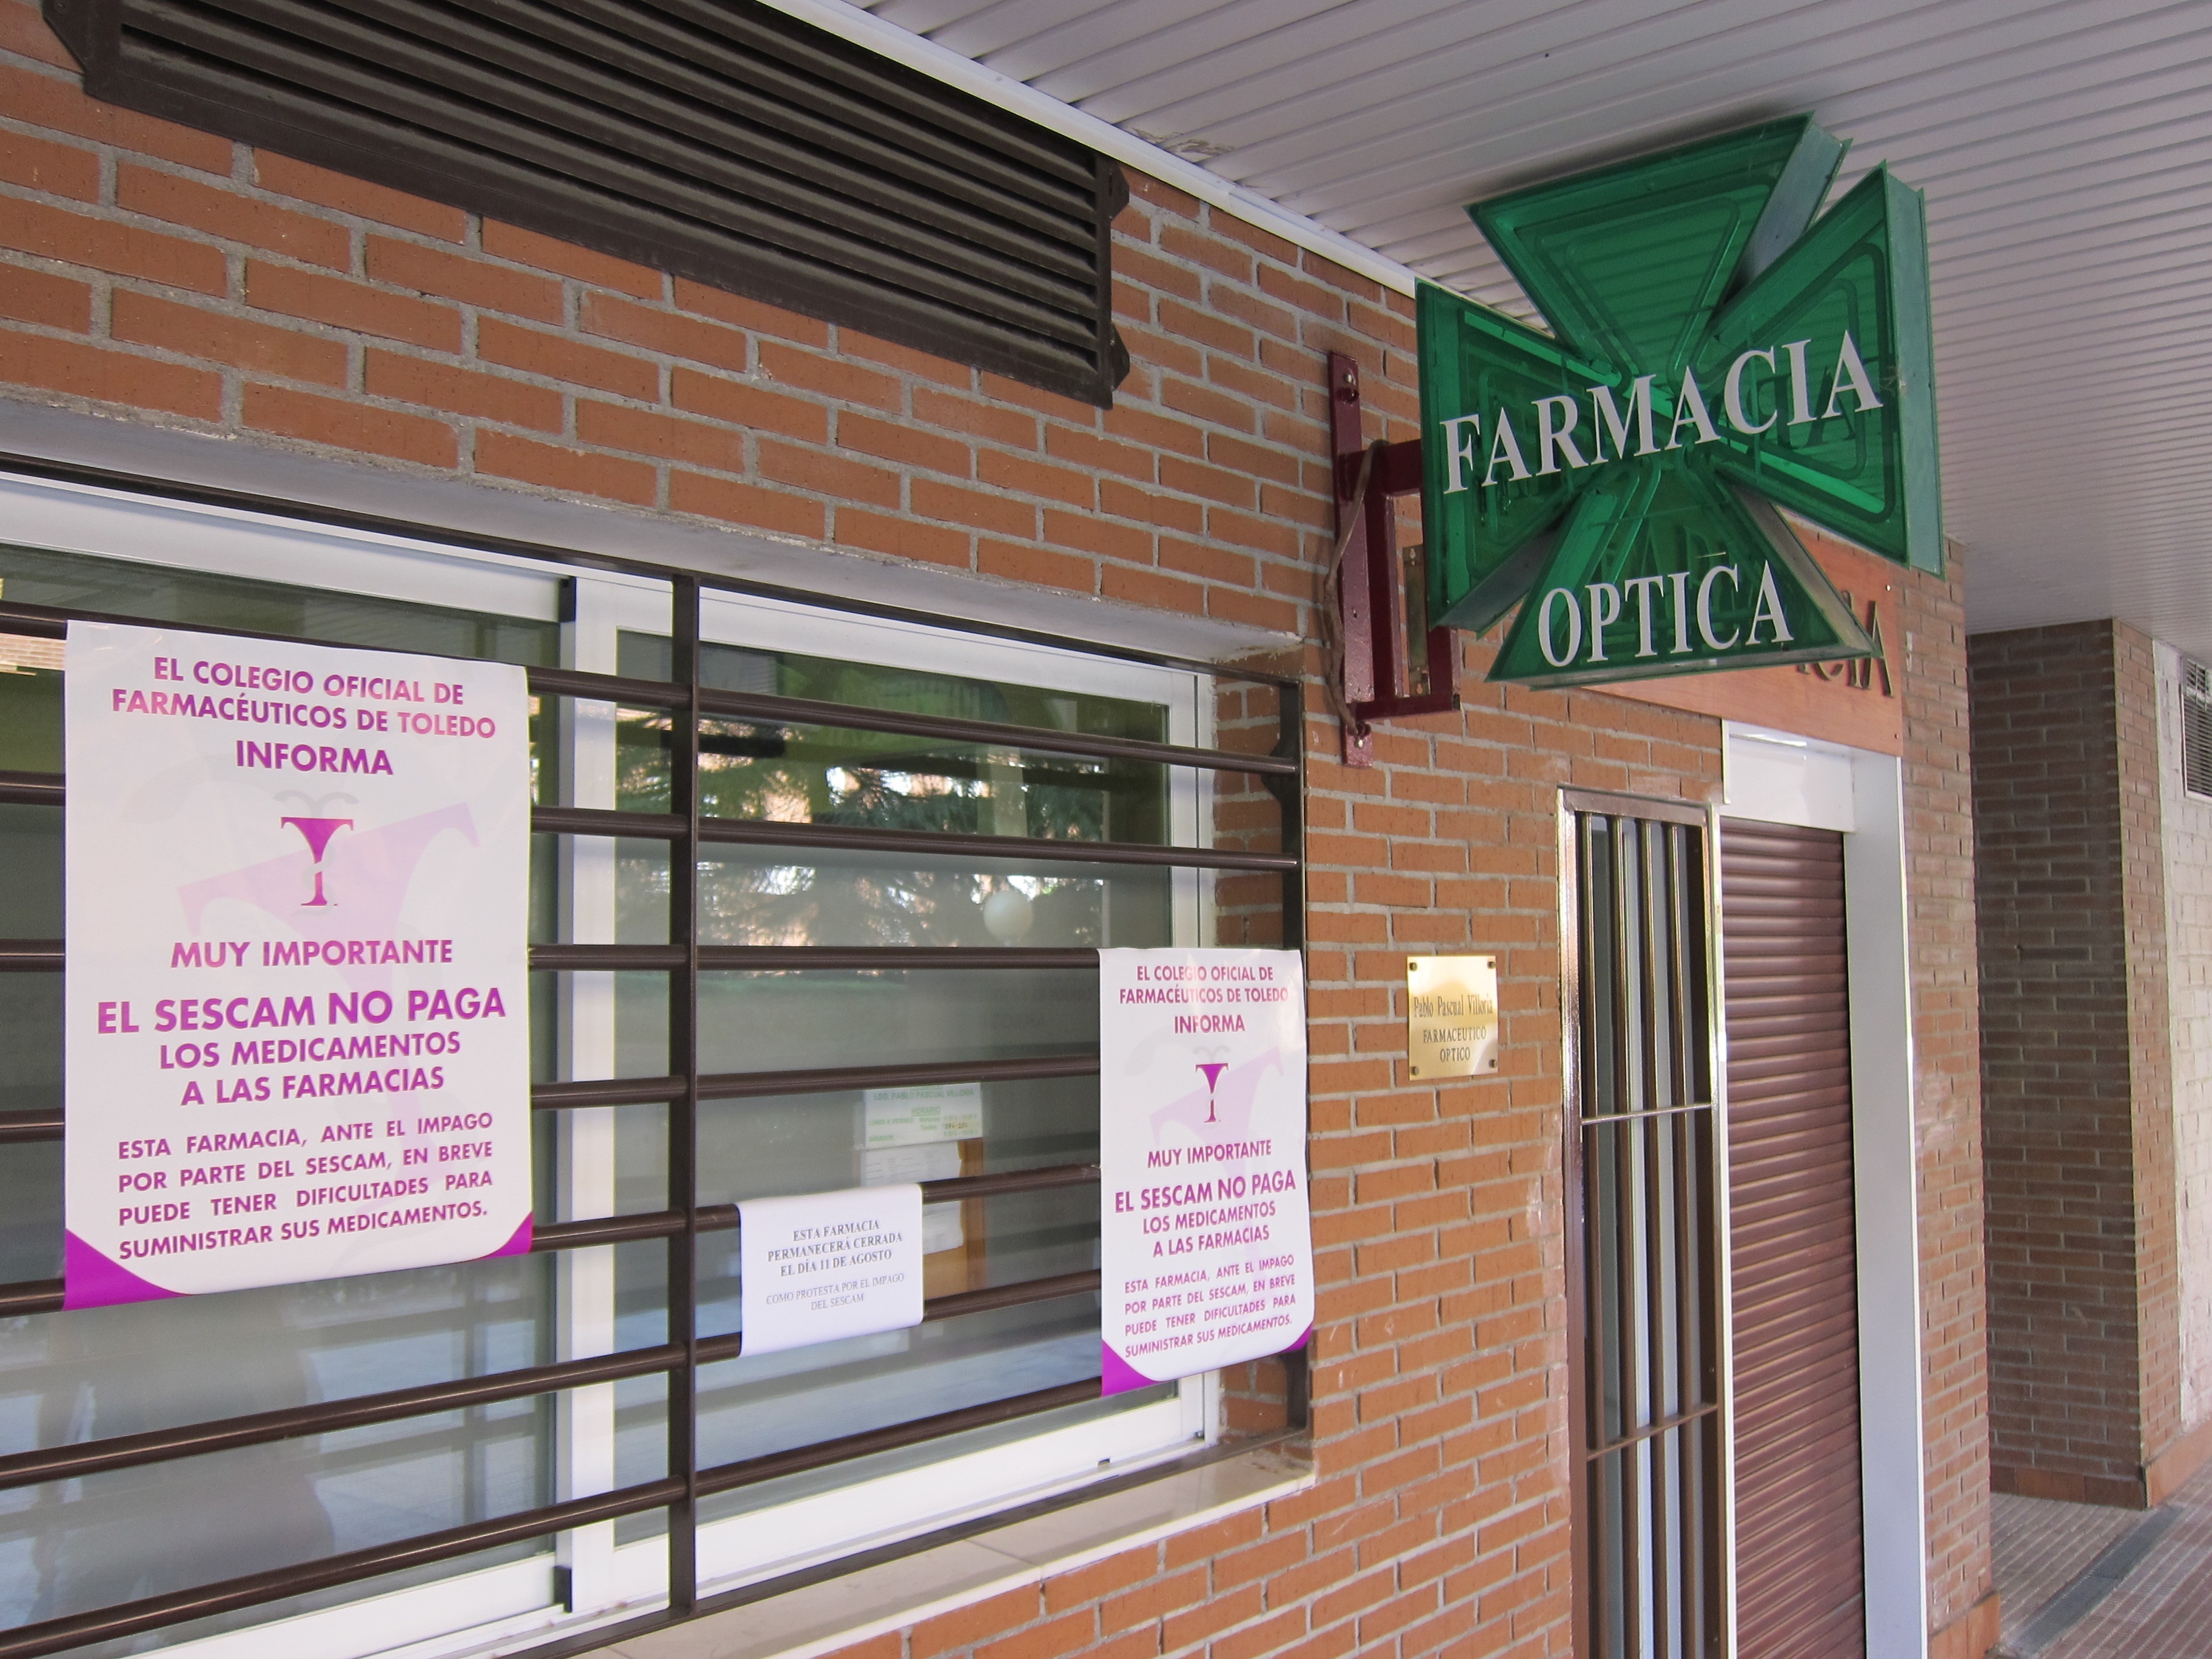 La Generalitat Valenciana dice que pese al cierre de farmacias no habrá desabastecimiento